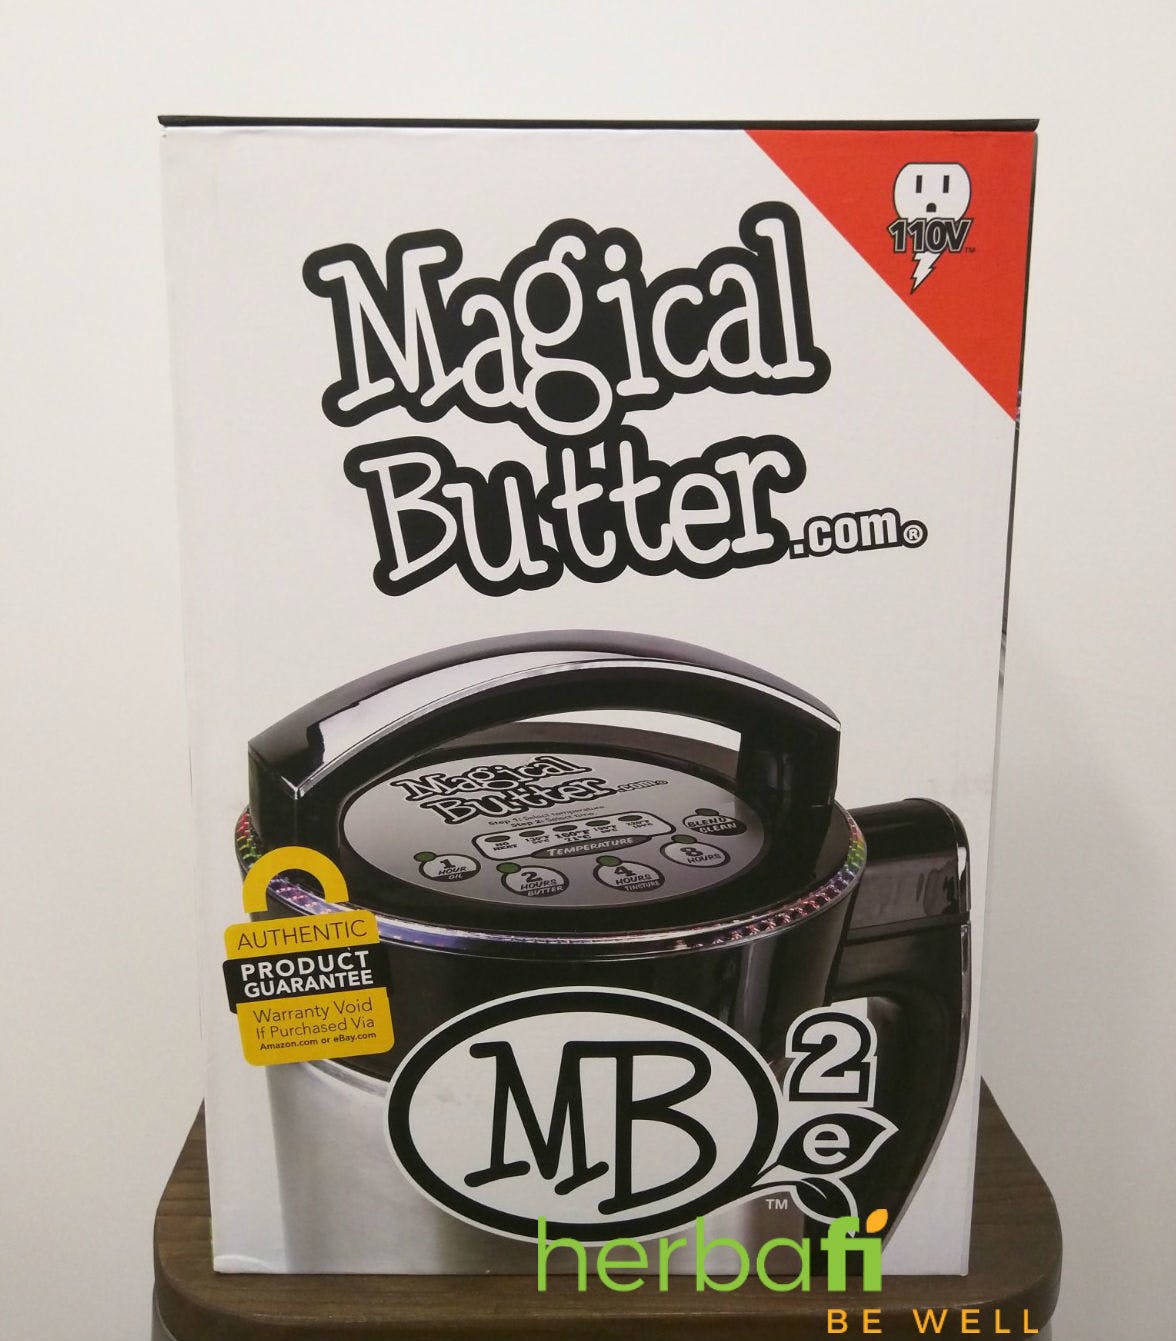 gear-magic-butter-mb2e